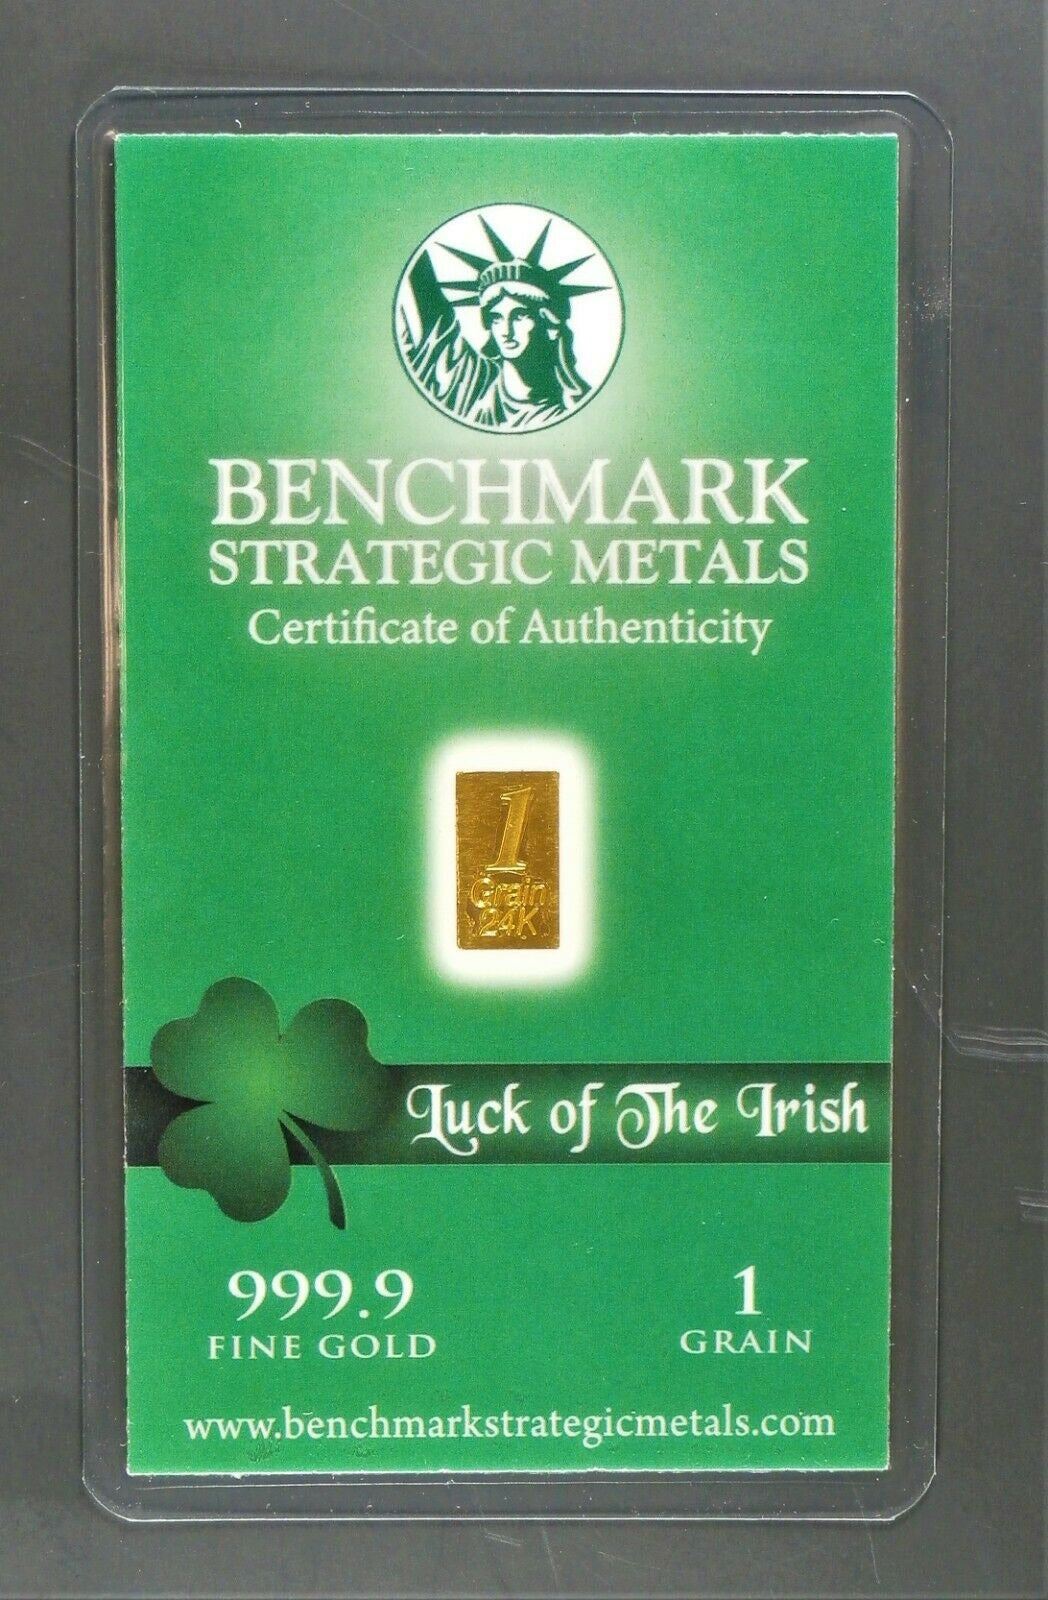 1/15 GRAM .9999 FINE 24K GOLD “LUCK O’ THE IRISH” BULLION BAR - IN COA CARD